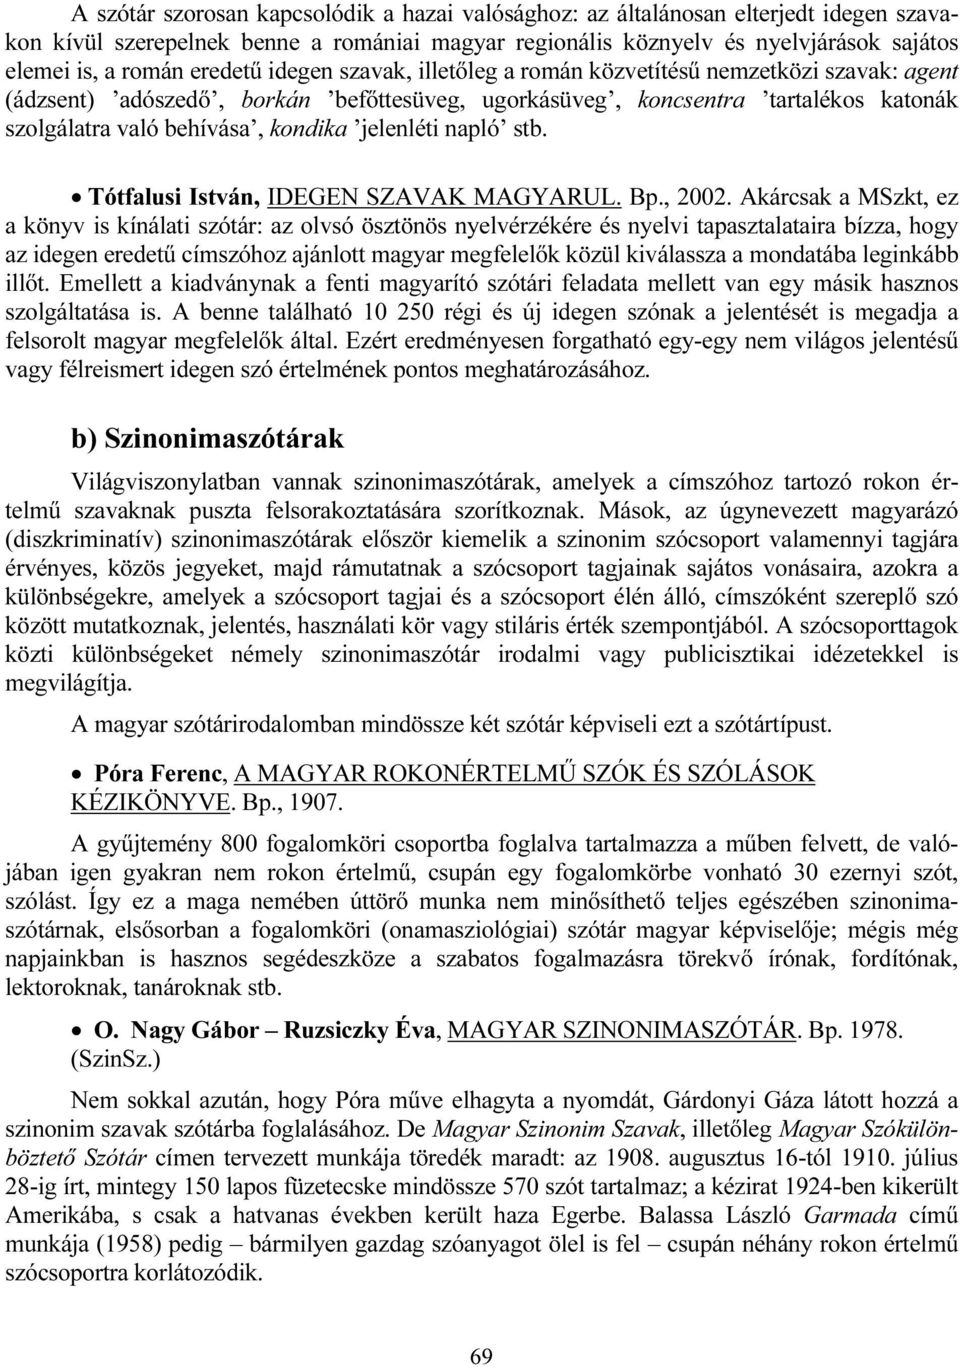 jelenléti napló stb. Tótfalusi István, IDEGEN SZAVAK MAGYARUL. Bp., 2002.